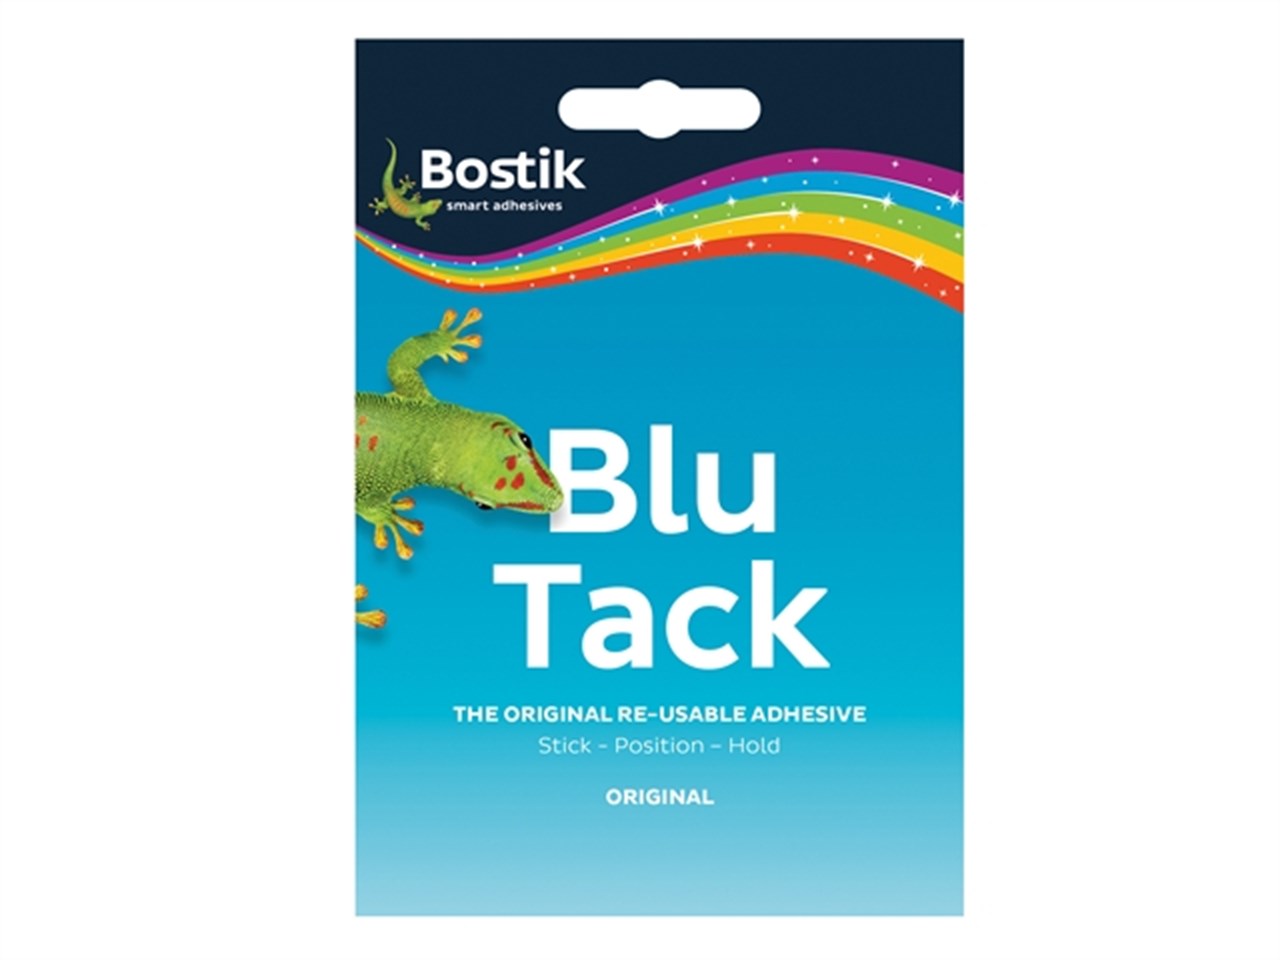 Bostik Blu-tack Mastic 64g Handy PK12